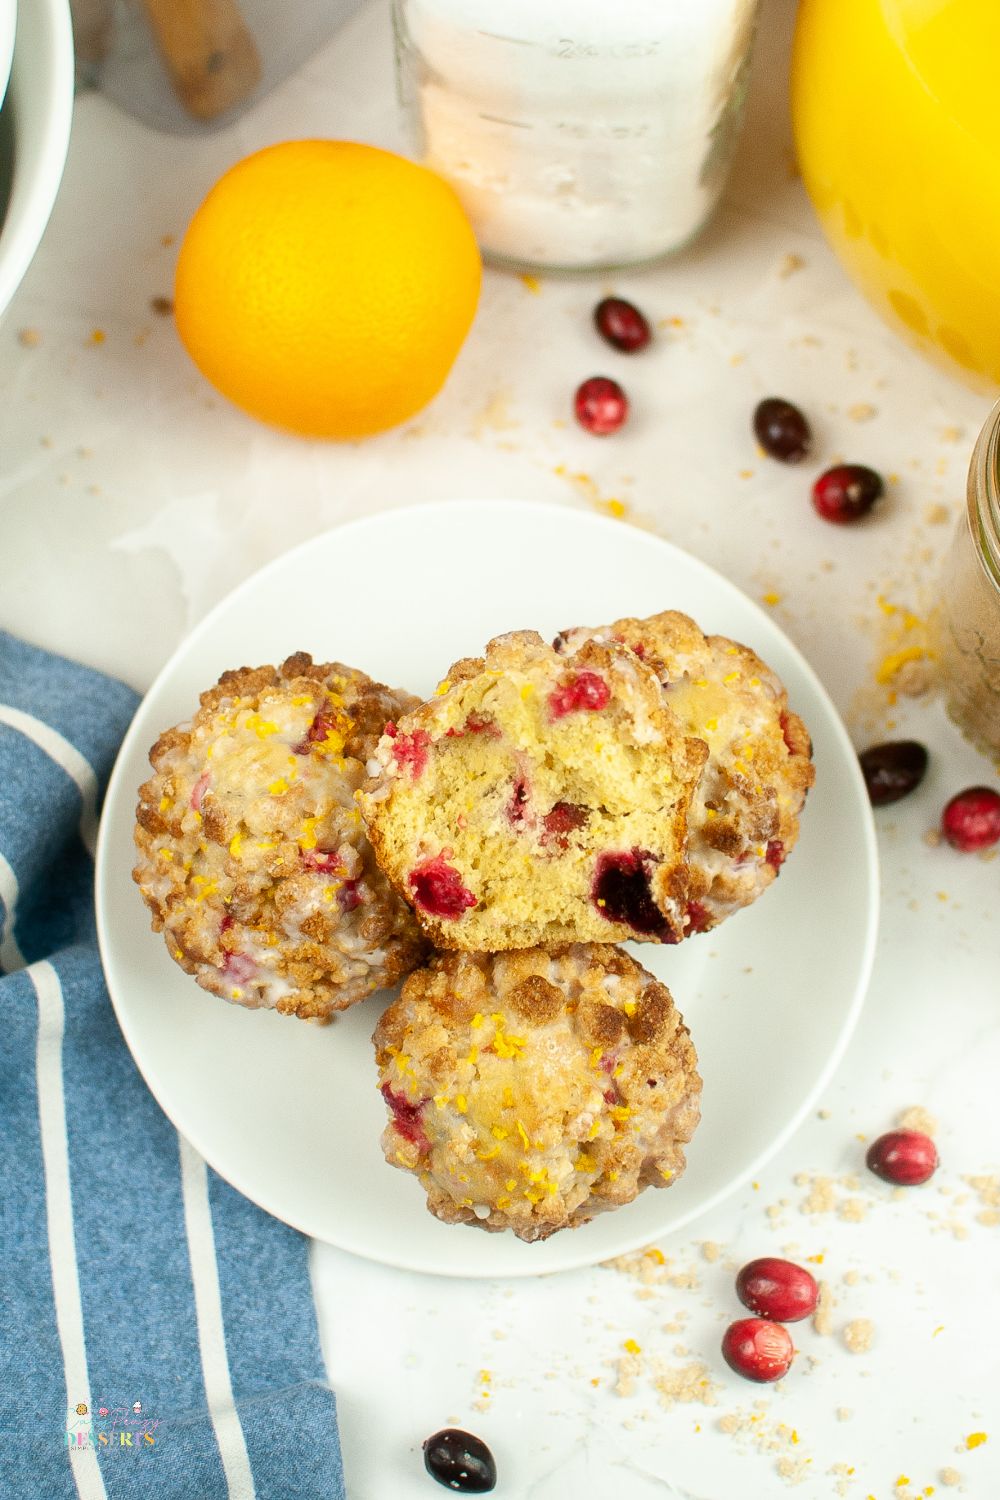 Cranberry orange muffin recipe